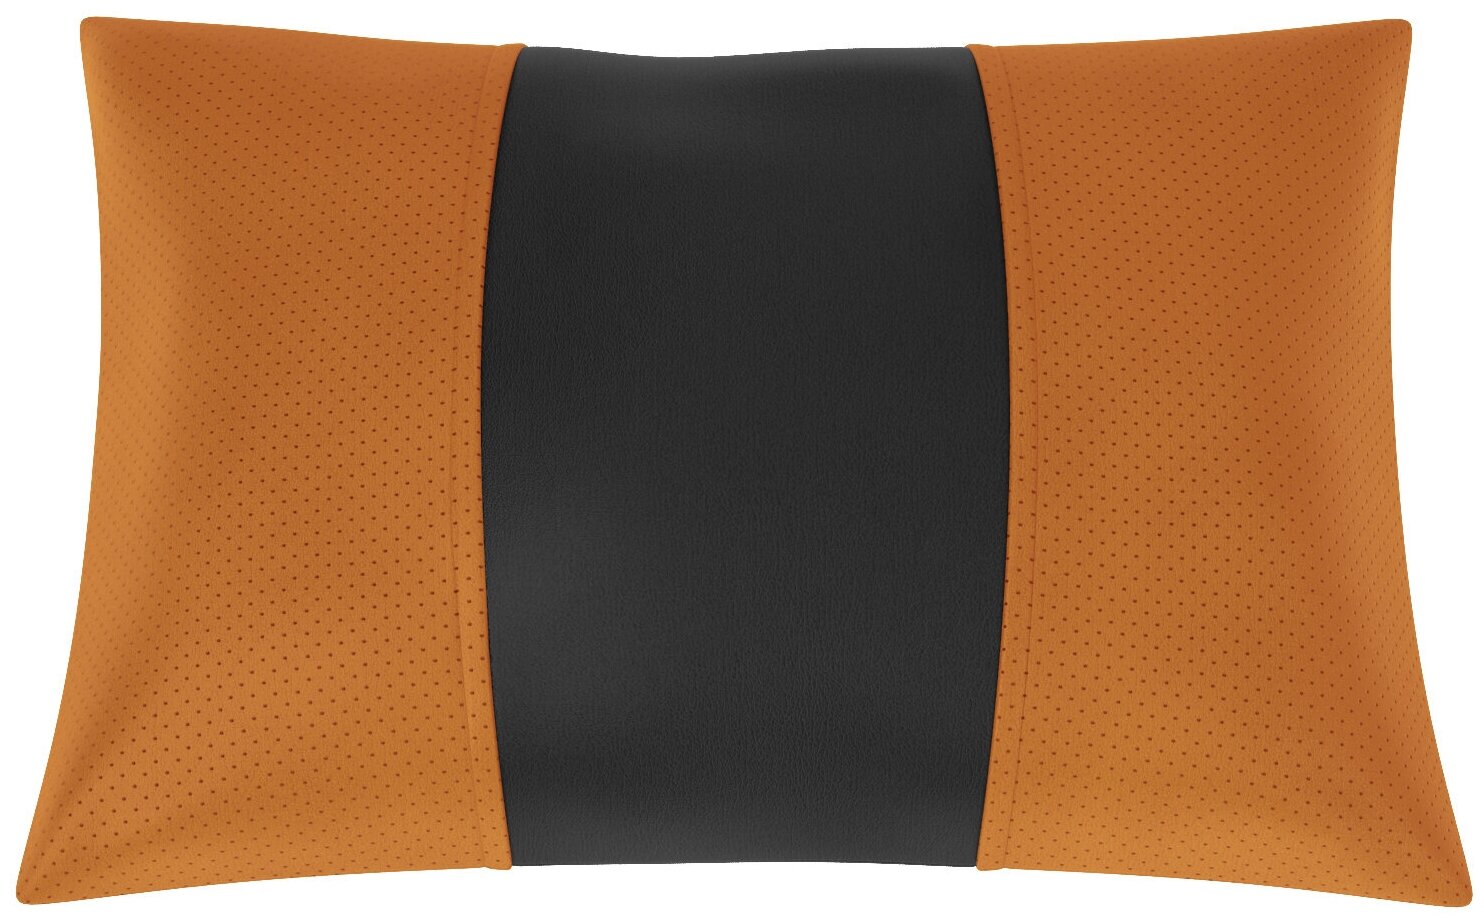 Автомобильная подушка для Hyundai Solaris (Хендай Солярис). Экокожа. Середина: чёрная гладкая экокожа. Боковины: оранжевая экокожа с перфорацией. 1 шт.